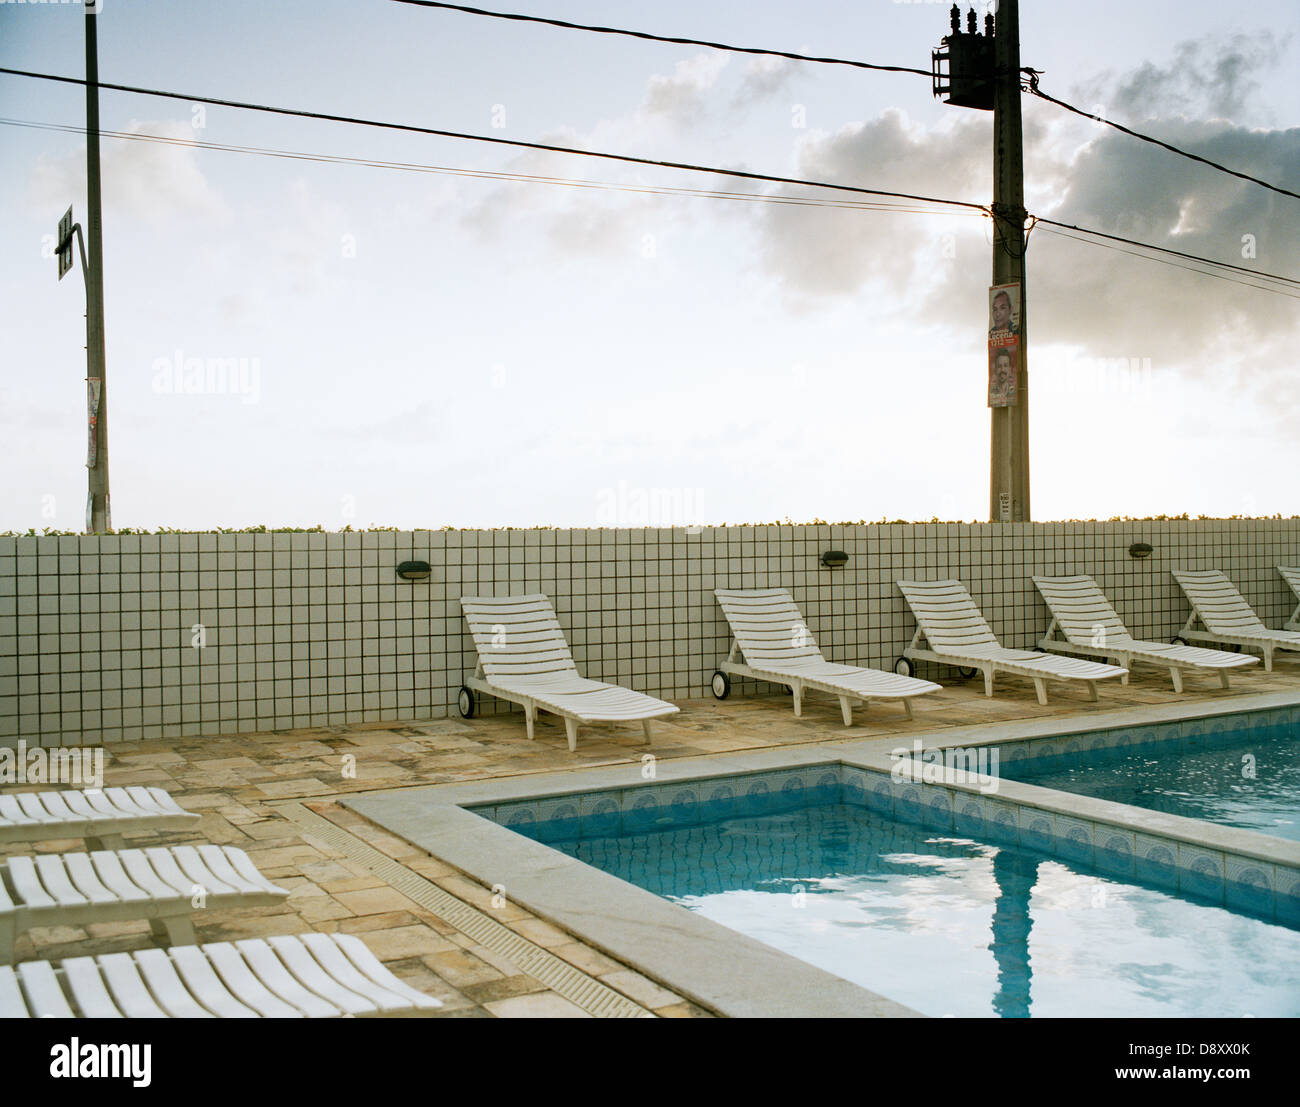 Zeile der Liegestühle am Swimmingpool Stockfoto